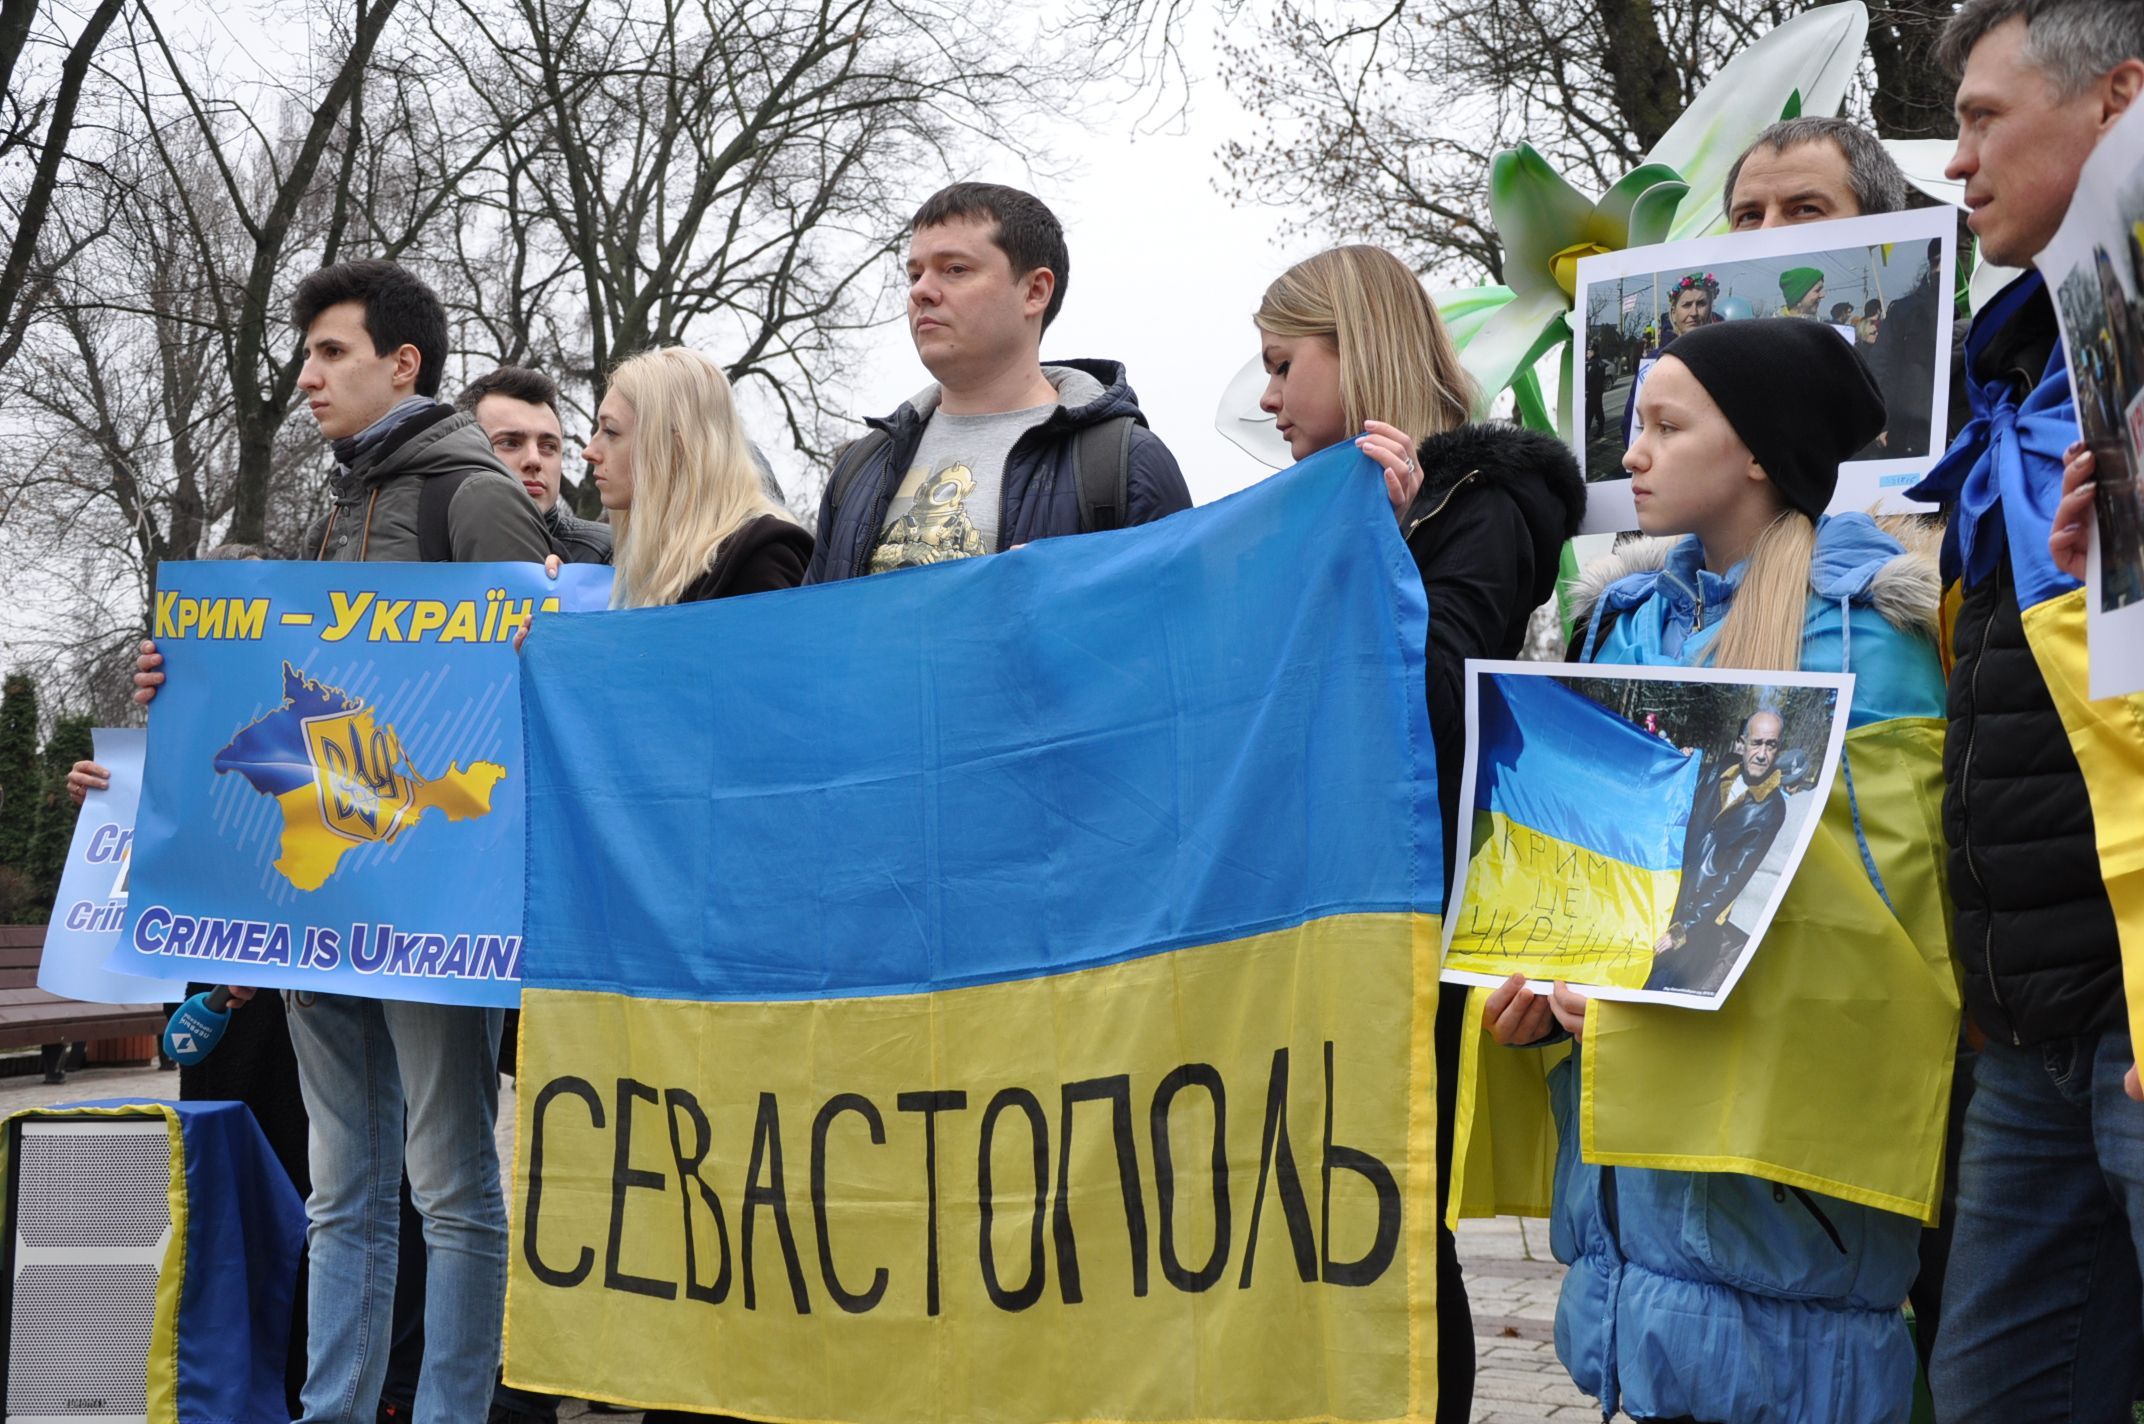 Річниця окупації Криму: в Києві 9 березня 2021 люди вийдуть на акцію солідарності